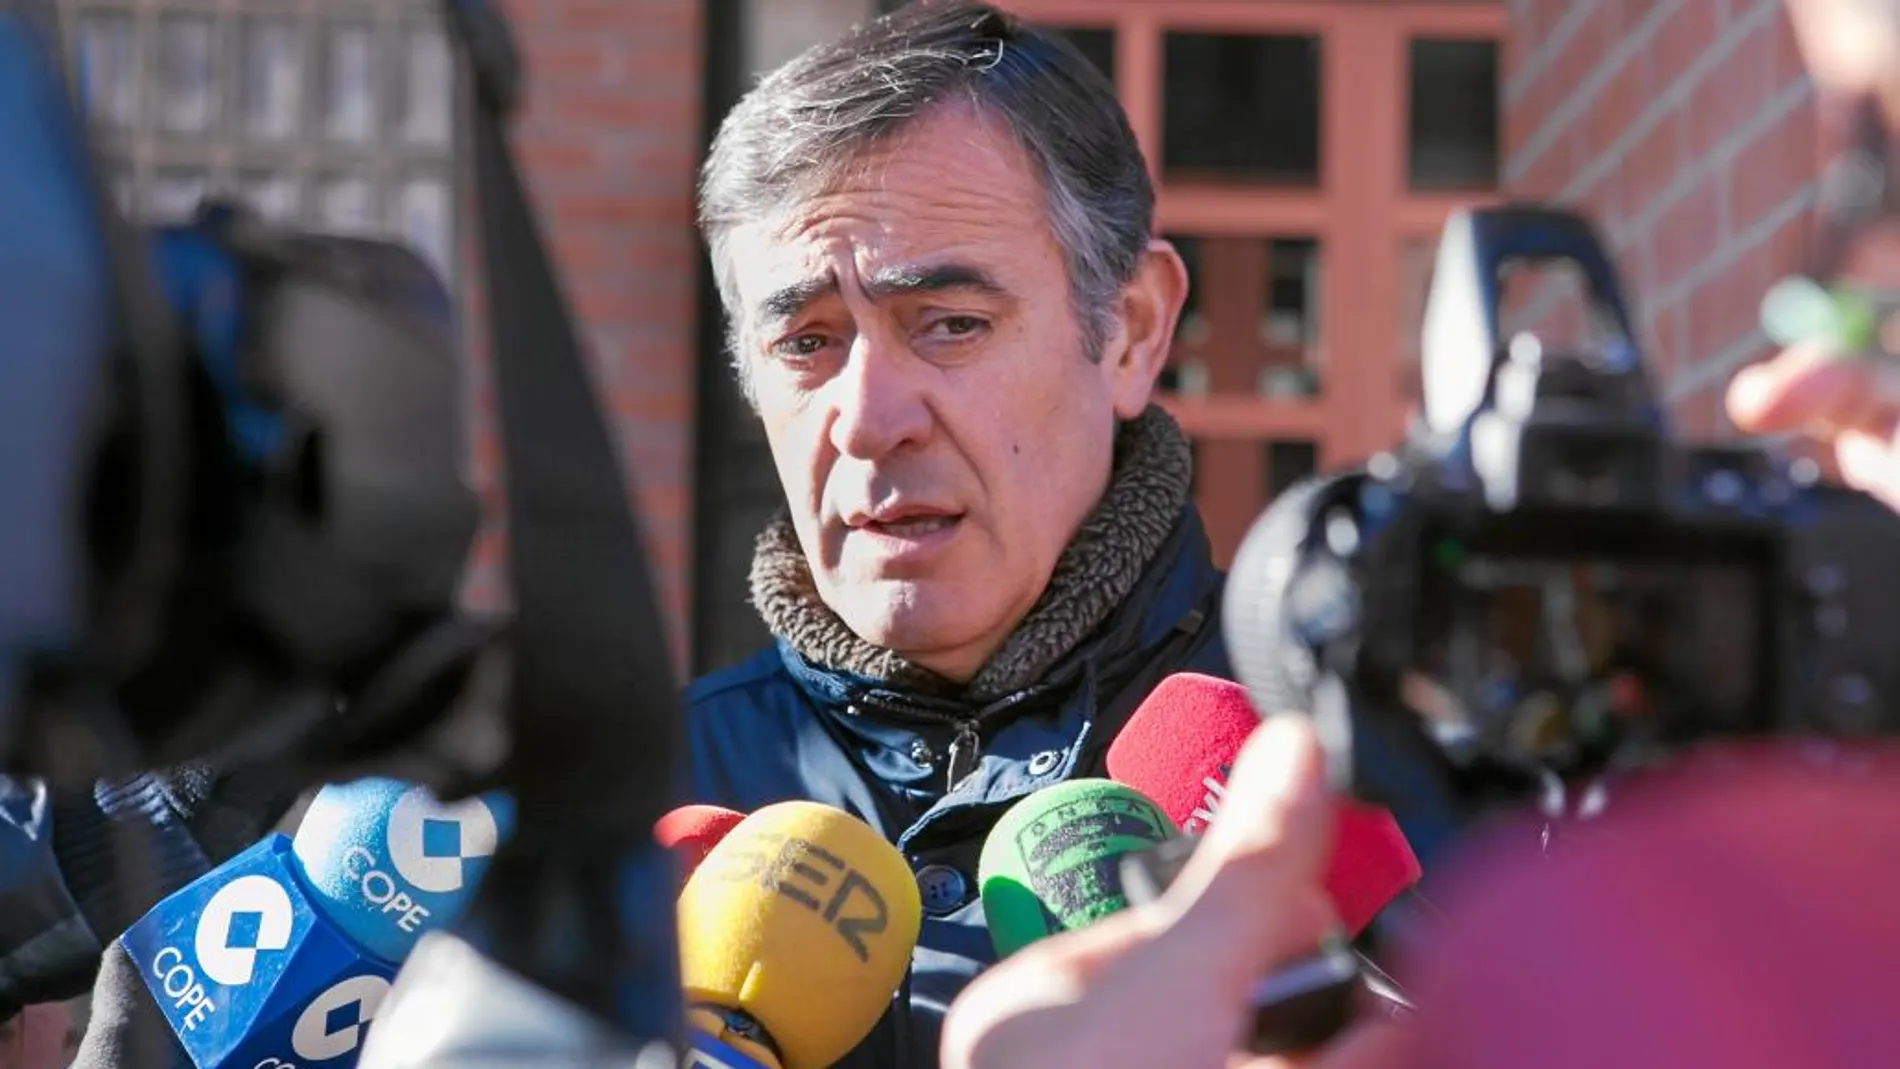 Antonio Pardo regresa a la primera línea de la política y competirá por presidir el PP de Soria